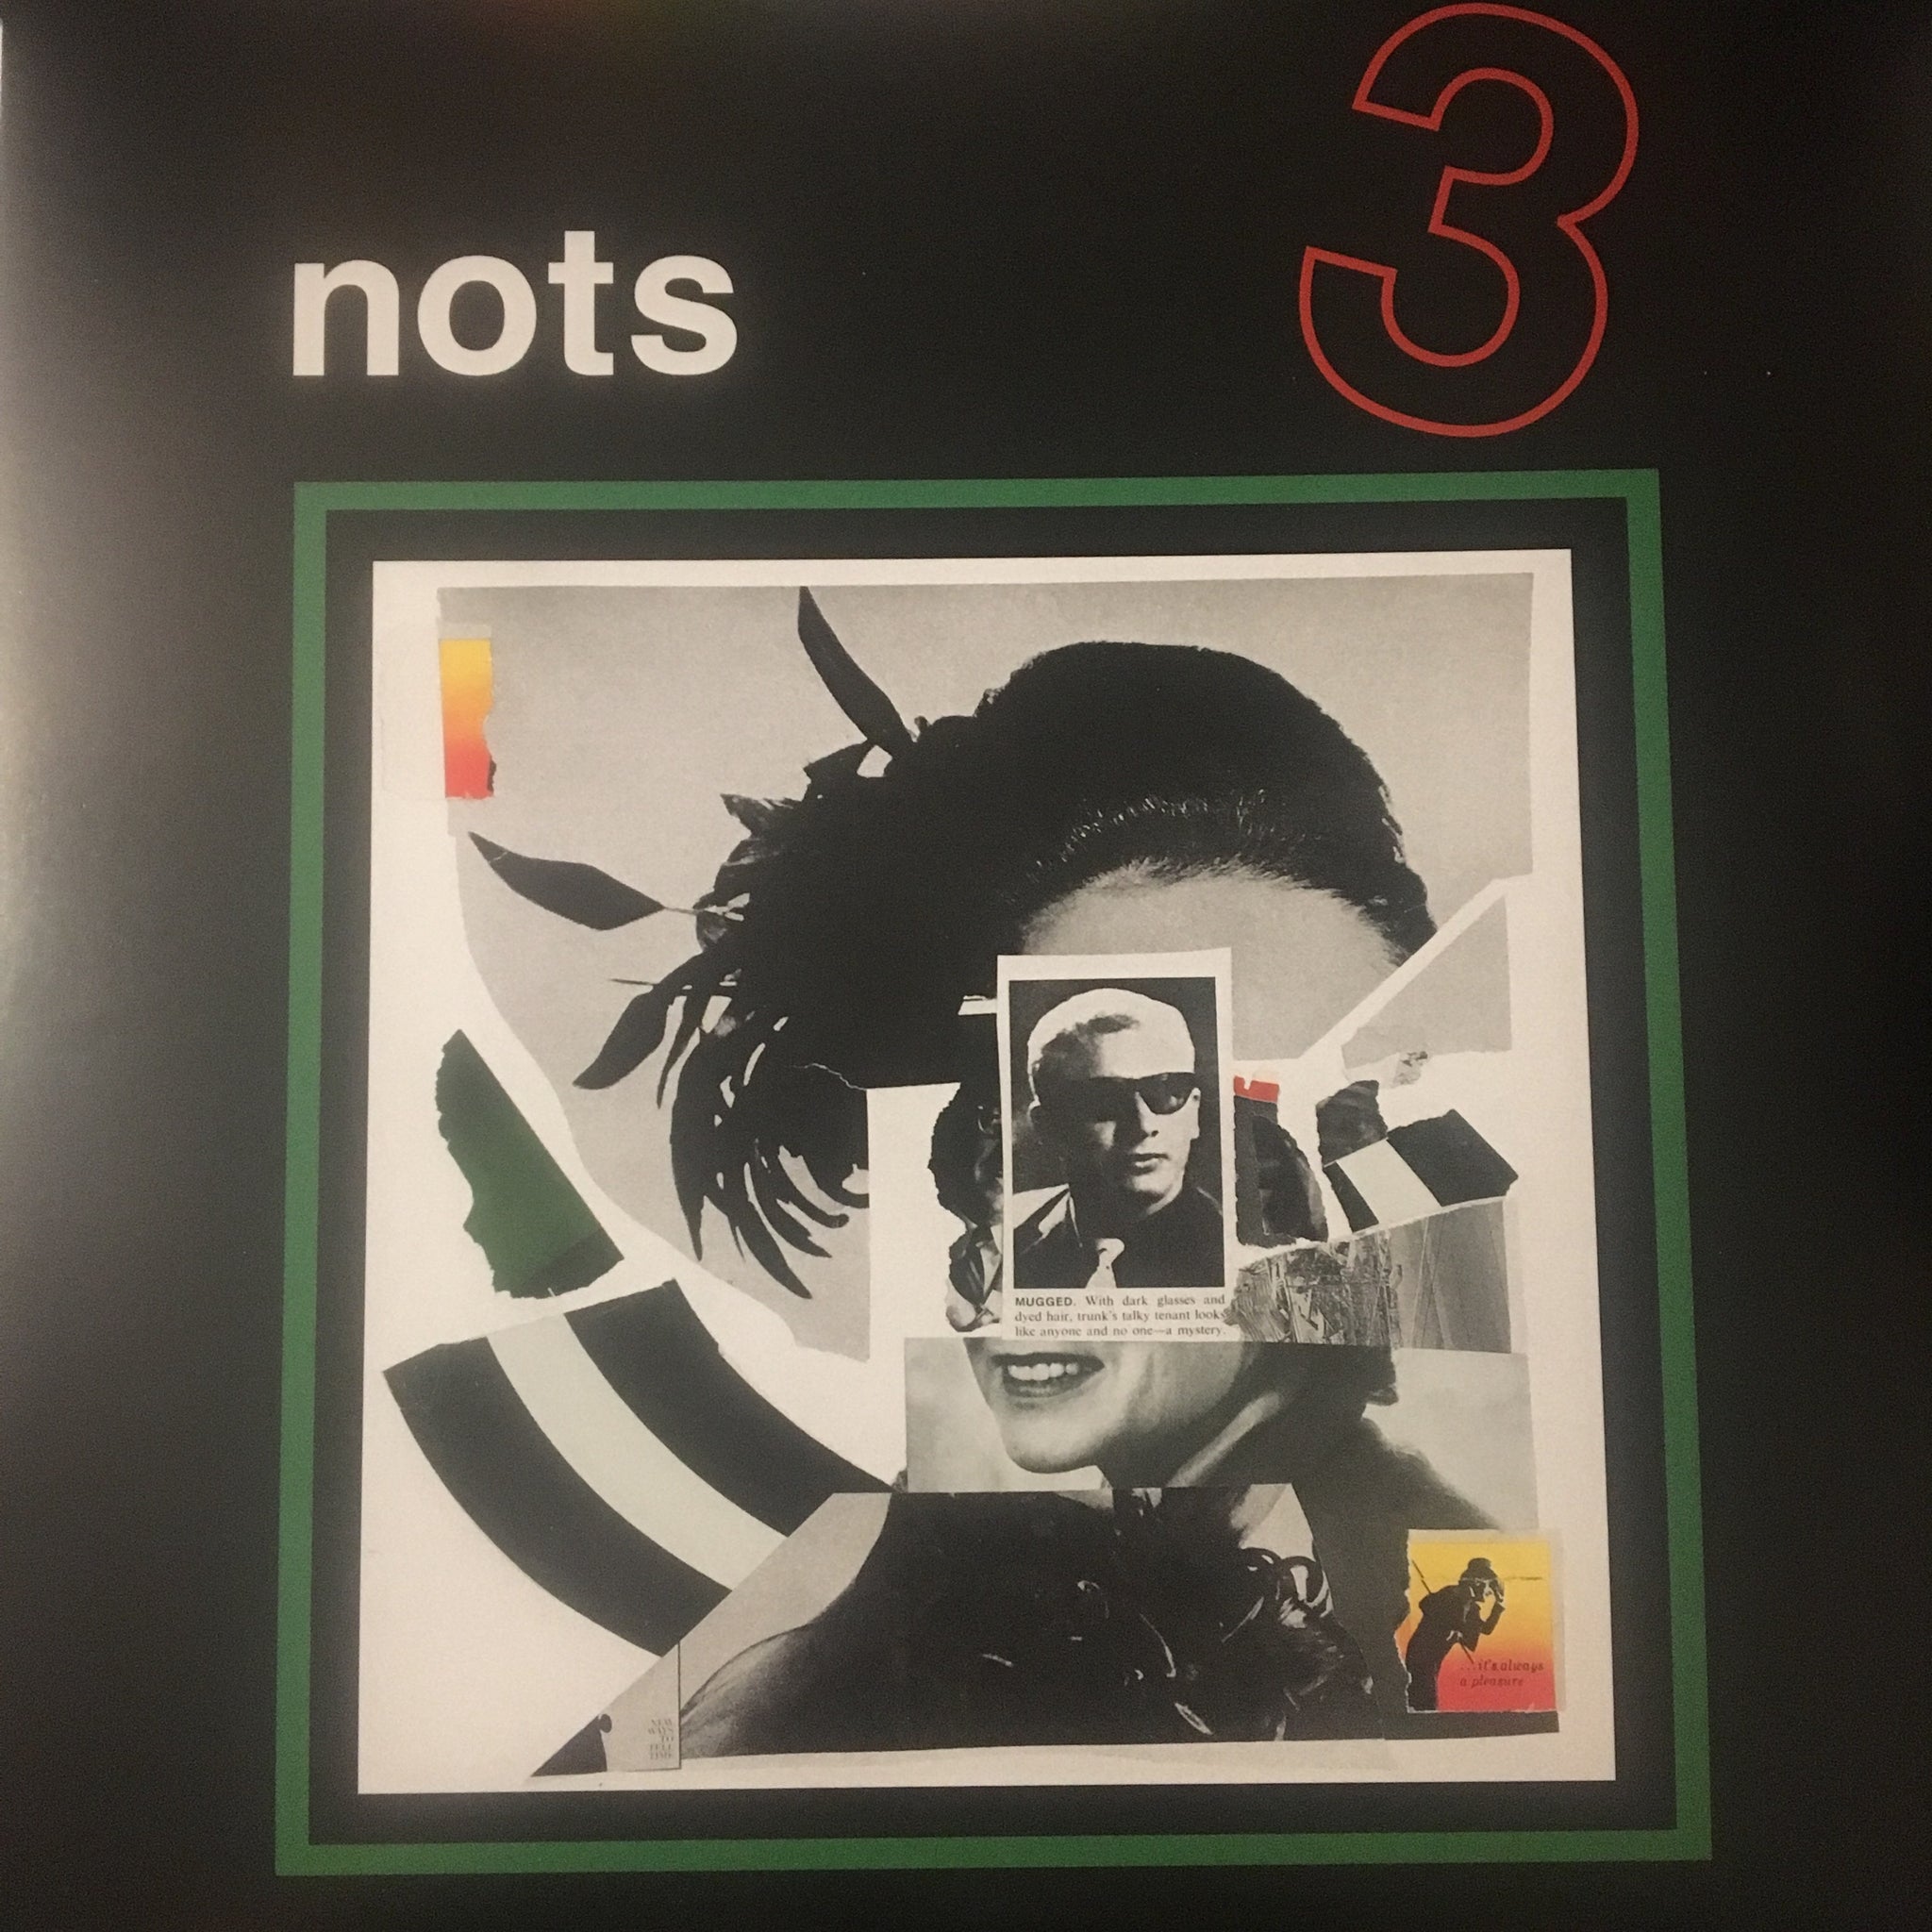 Nots - 3 - New LP